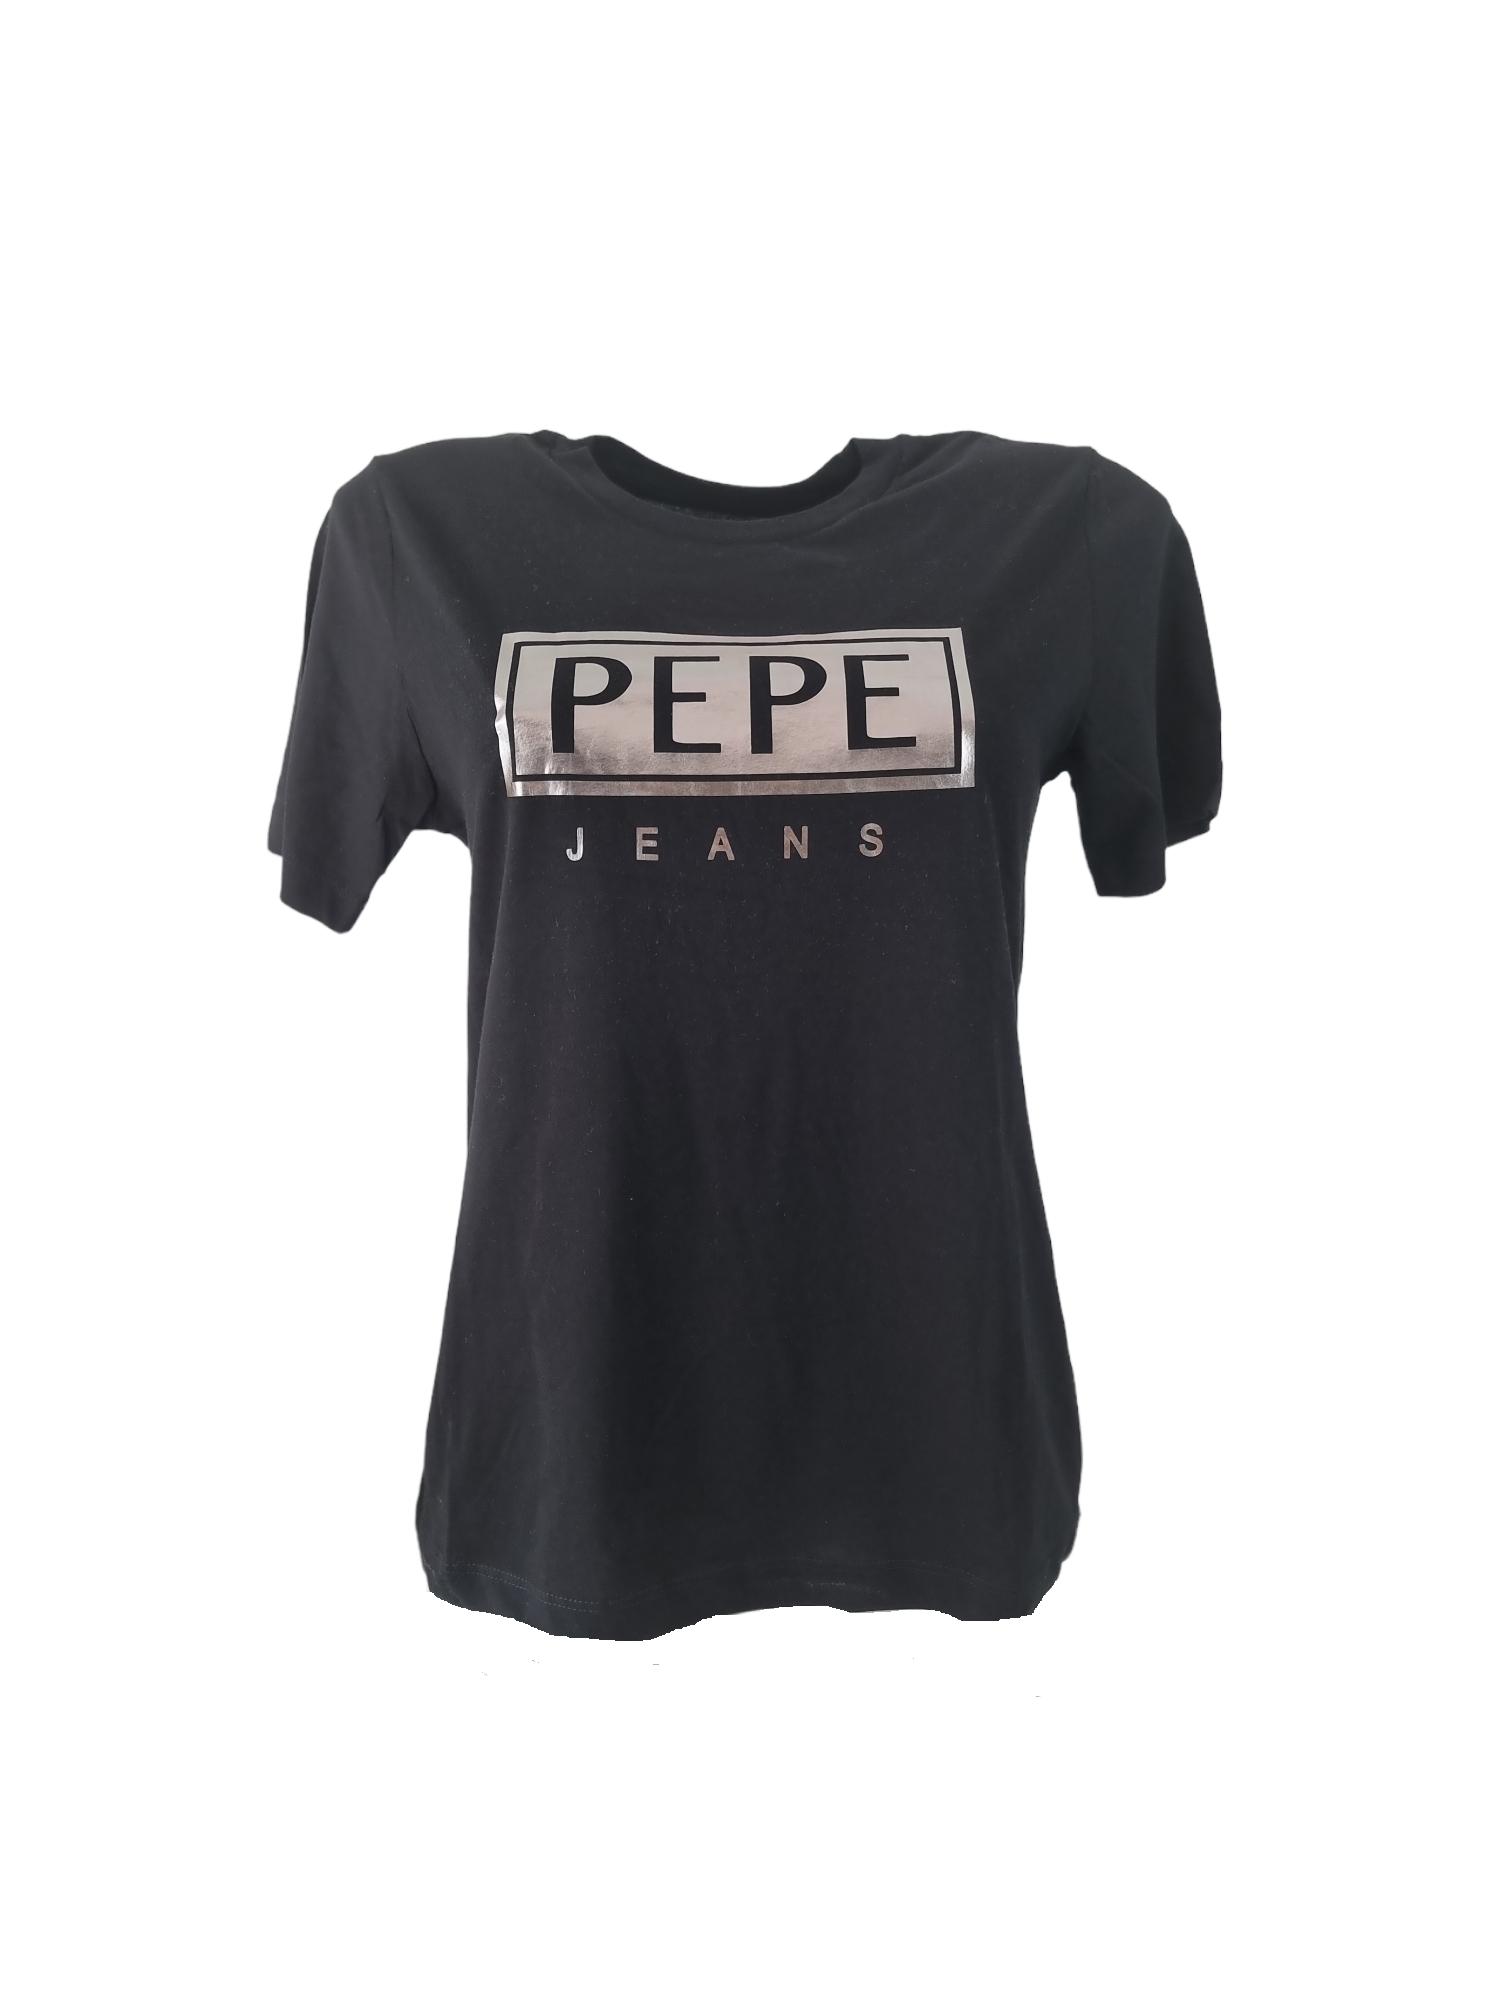 T-shirt da donna in cotone Pepe Jeans nero